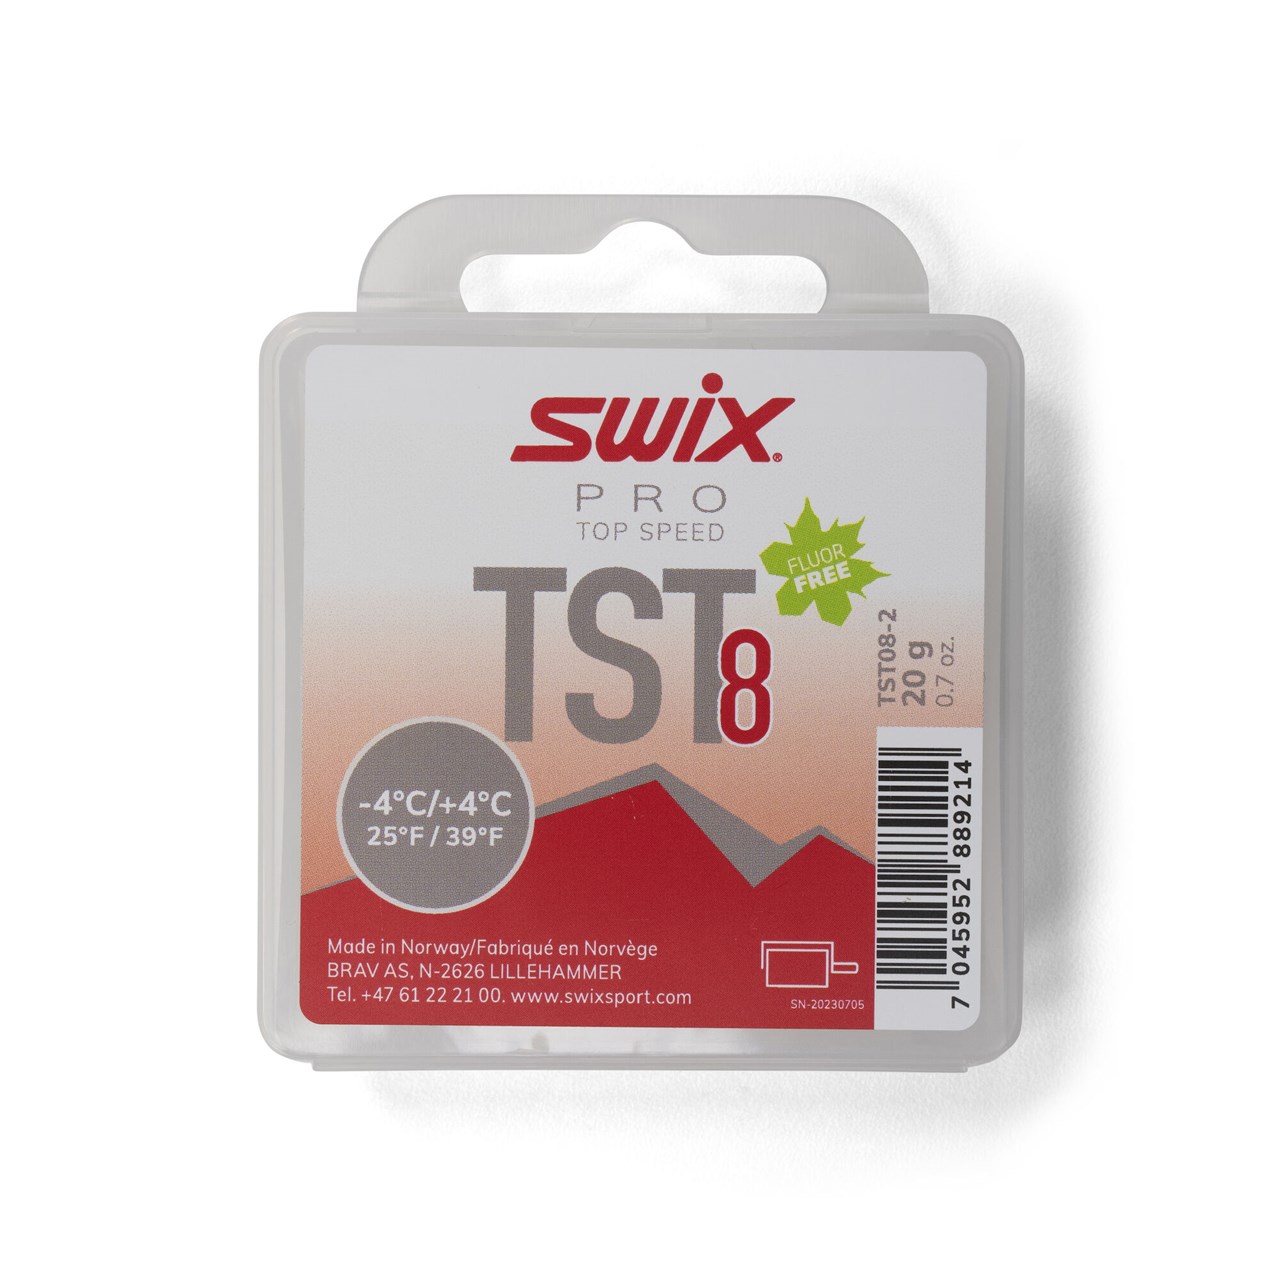 SWIX   TS8 Turbo Red, -4°C/+4°C, 20g